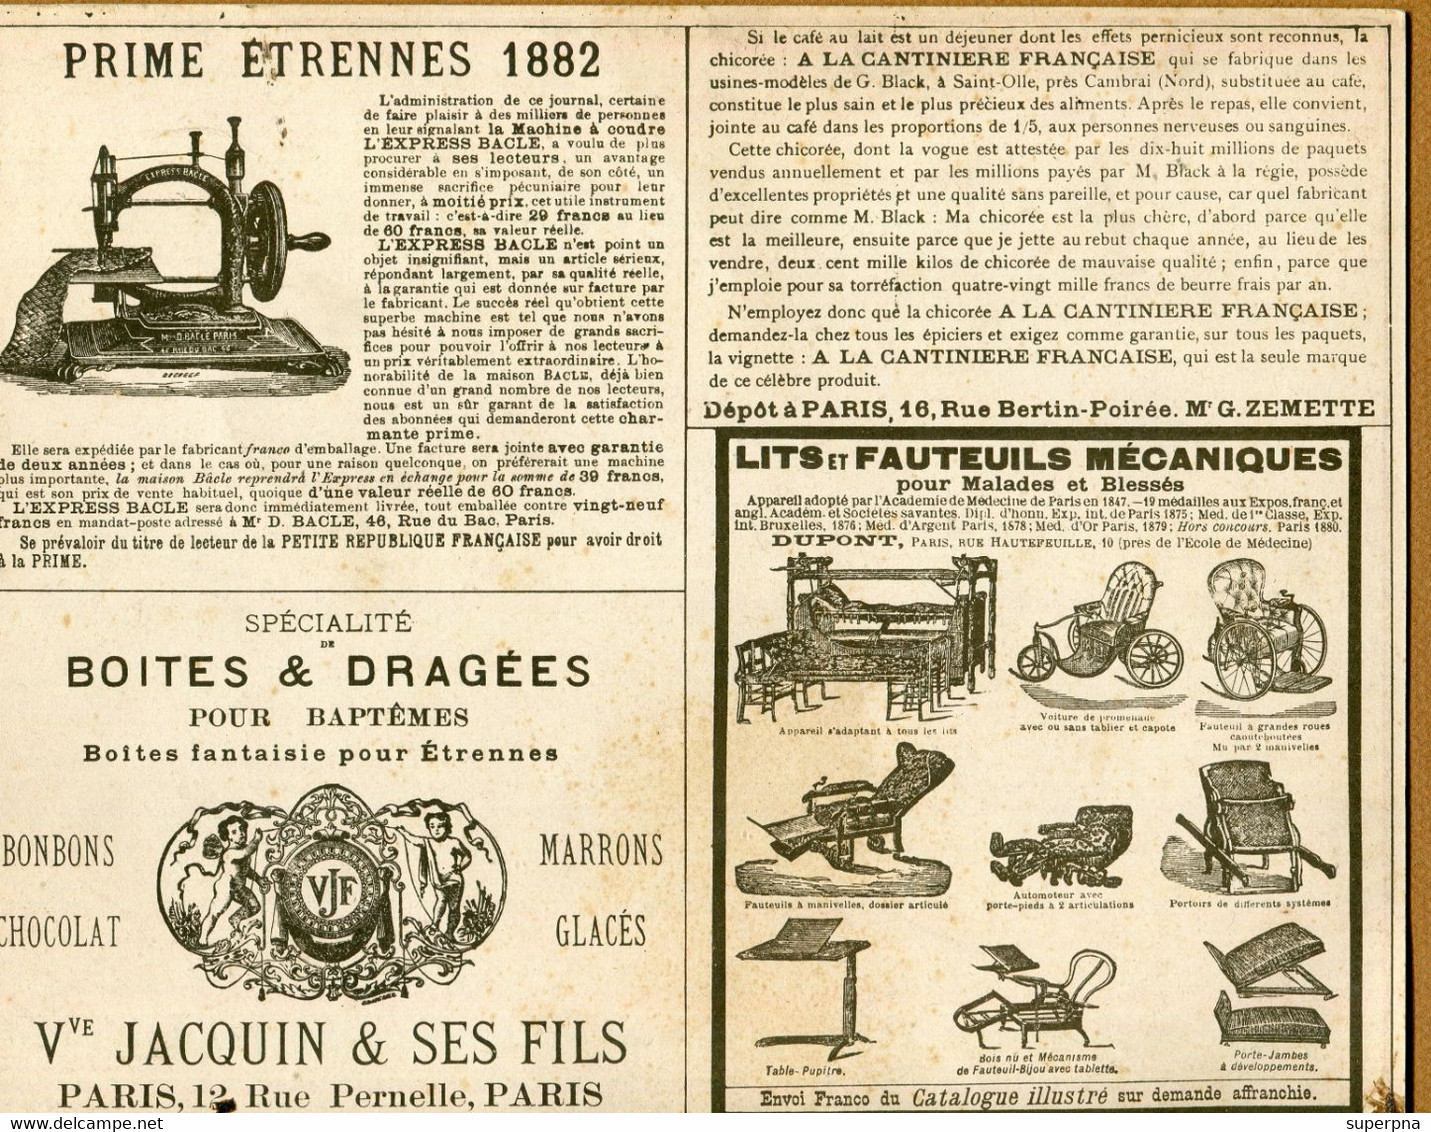 CALENDRIER 1882 : JOURNAL " LA PETITE REPUBLIQUE FRANCAISE " - Tamaño Grande : ...-1900